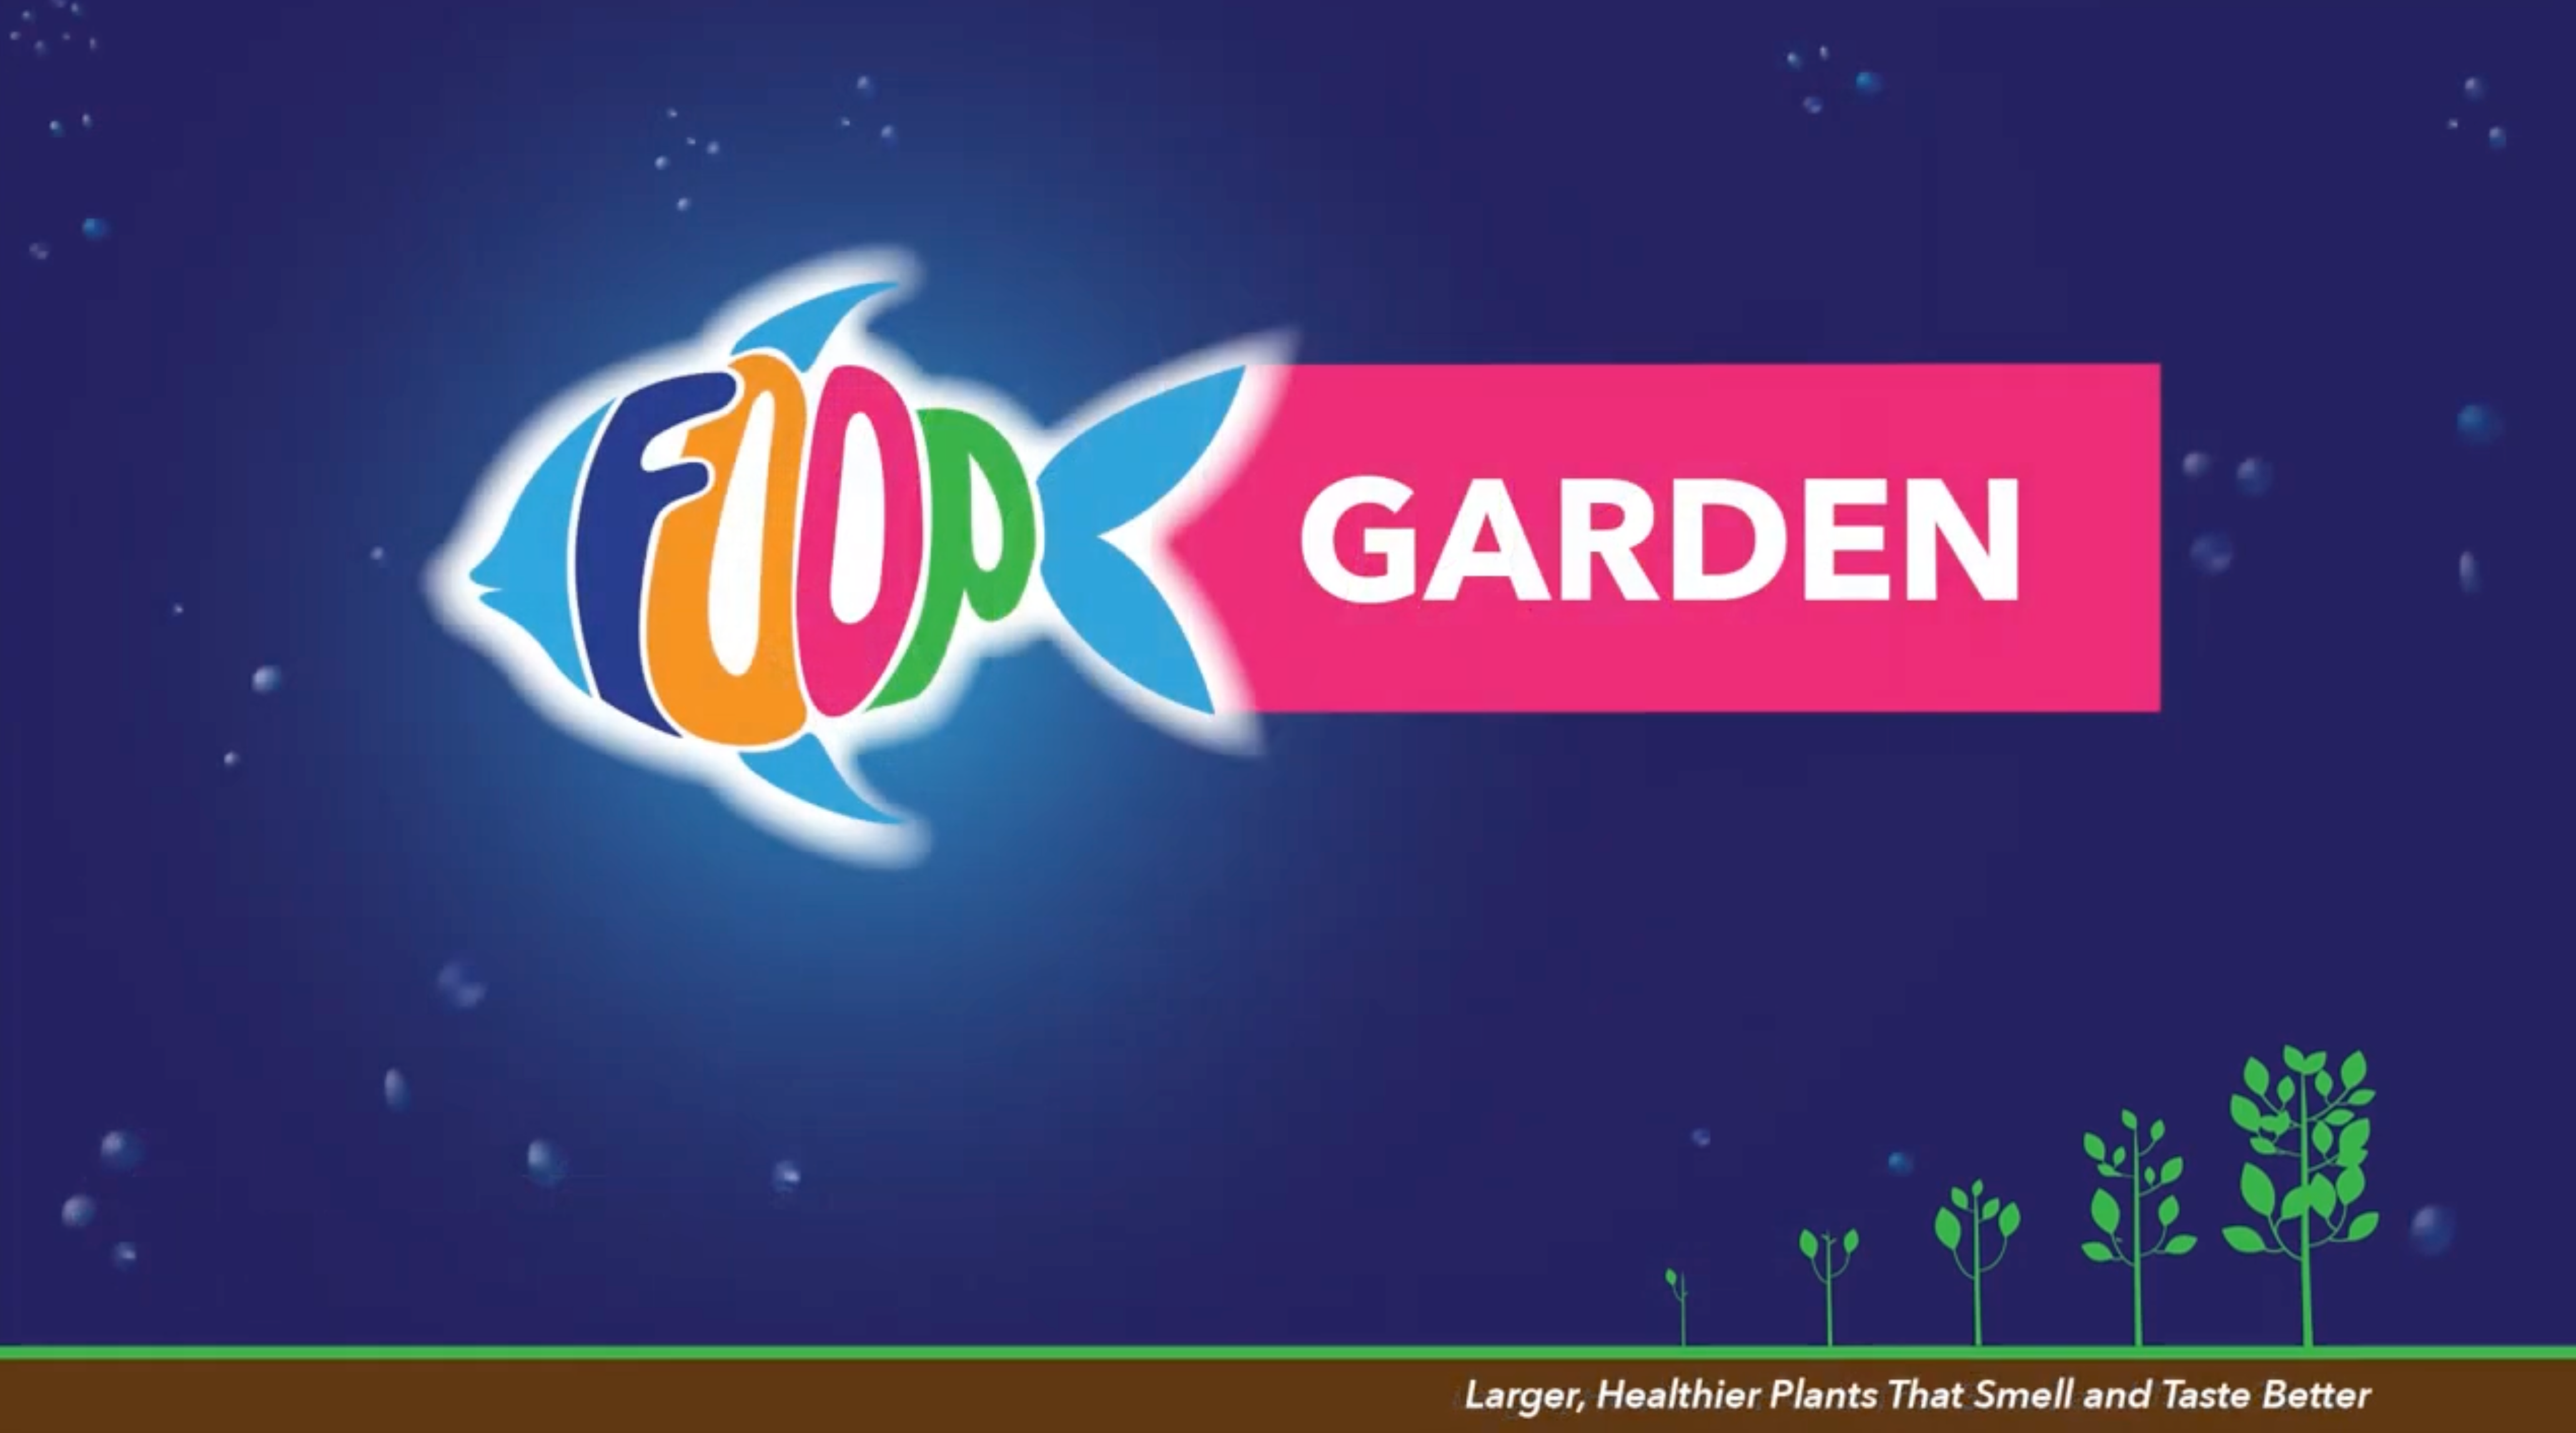 FOOP Garden - Side by Side Test